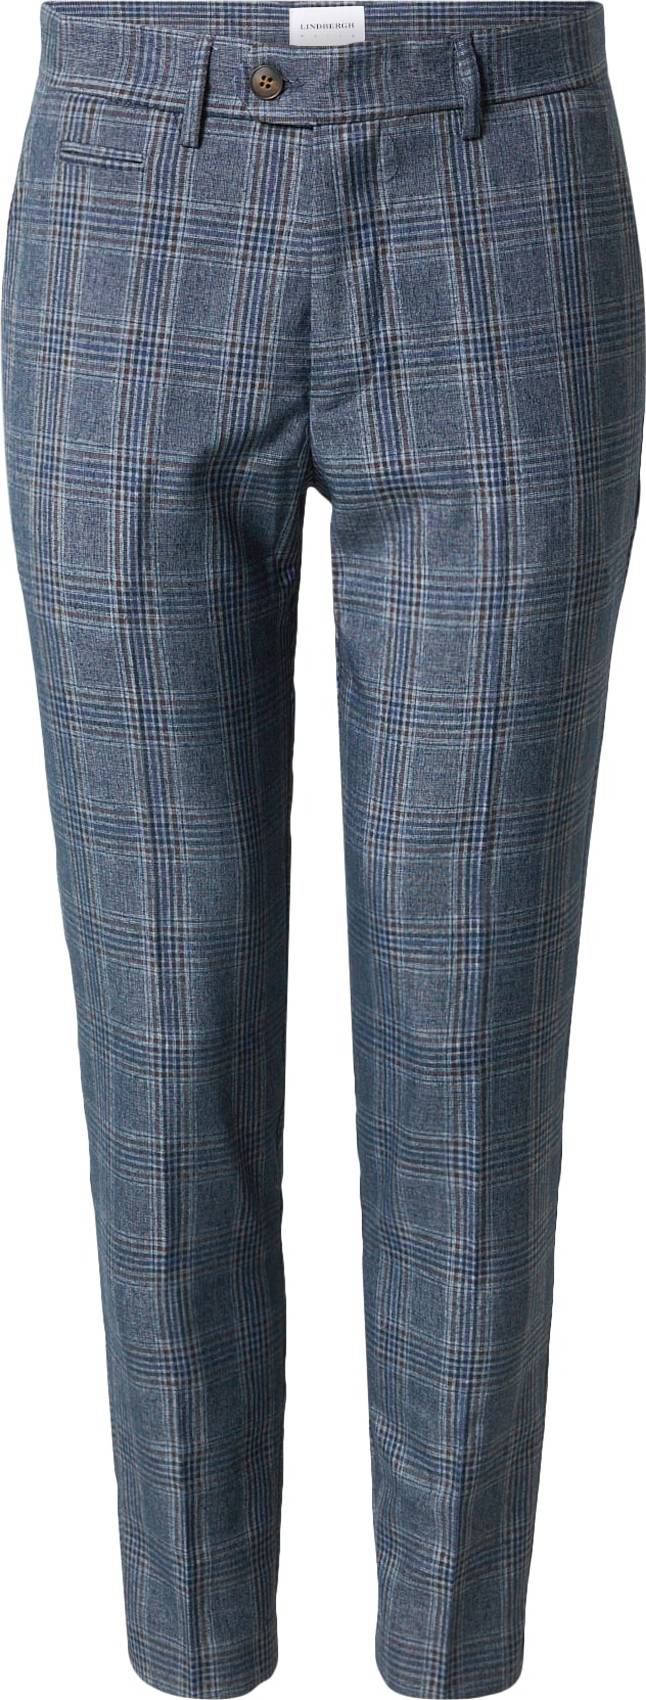 Chino kalhoty lindbergh námořnická modř / karamelová / bílá